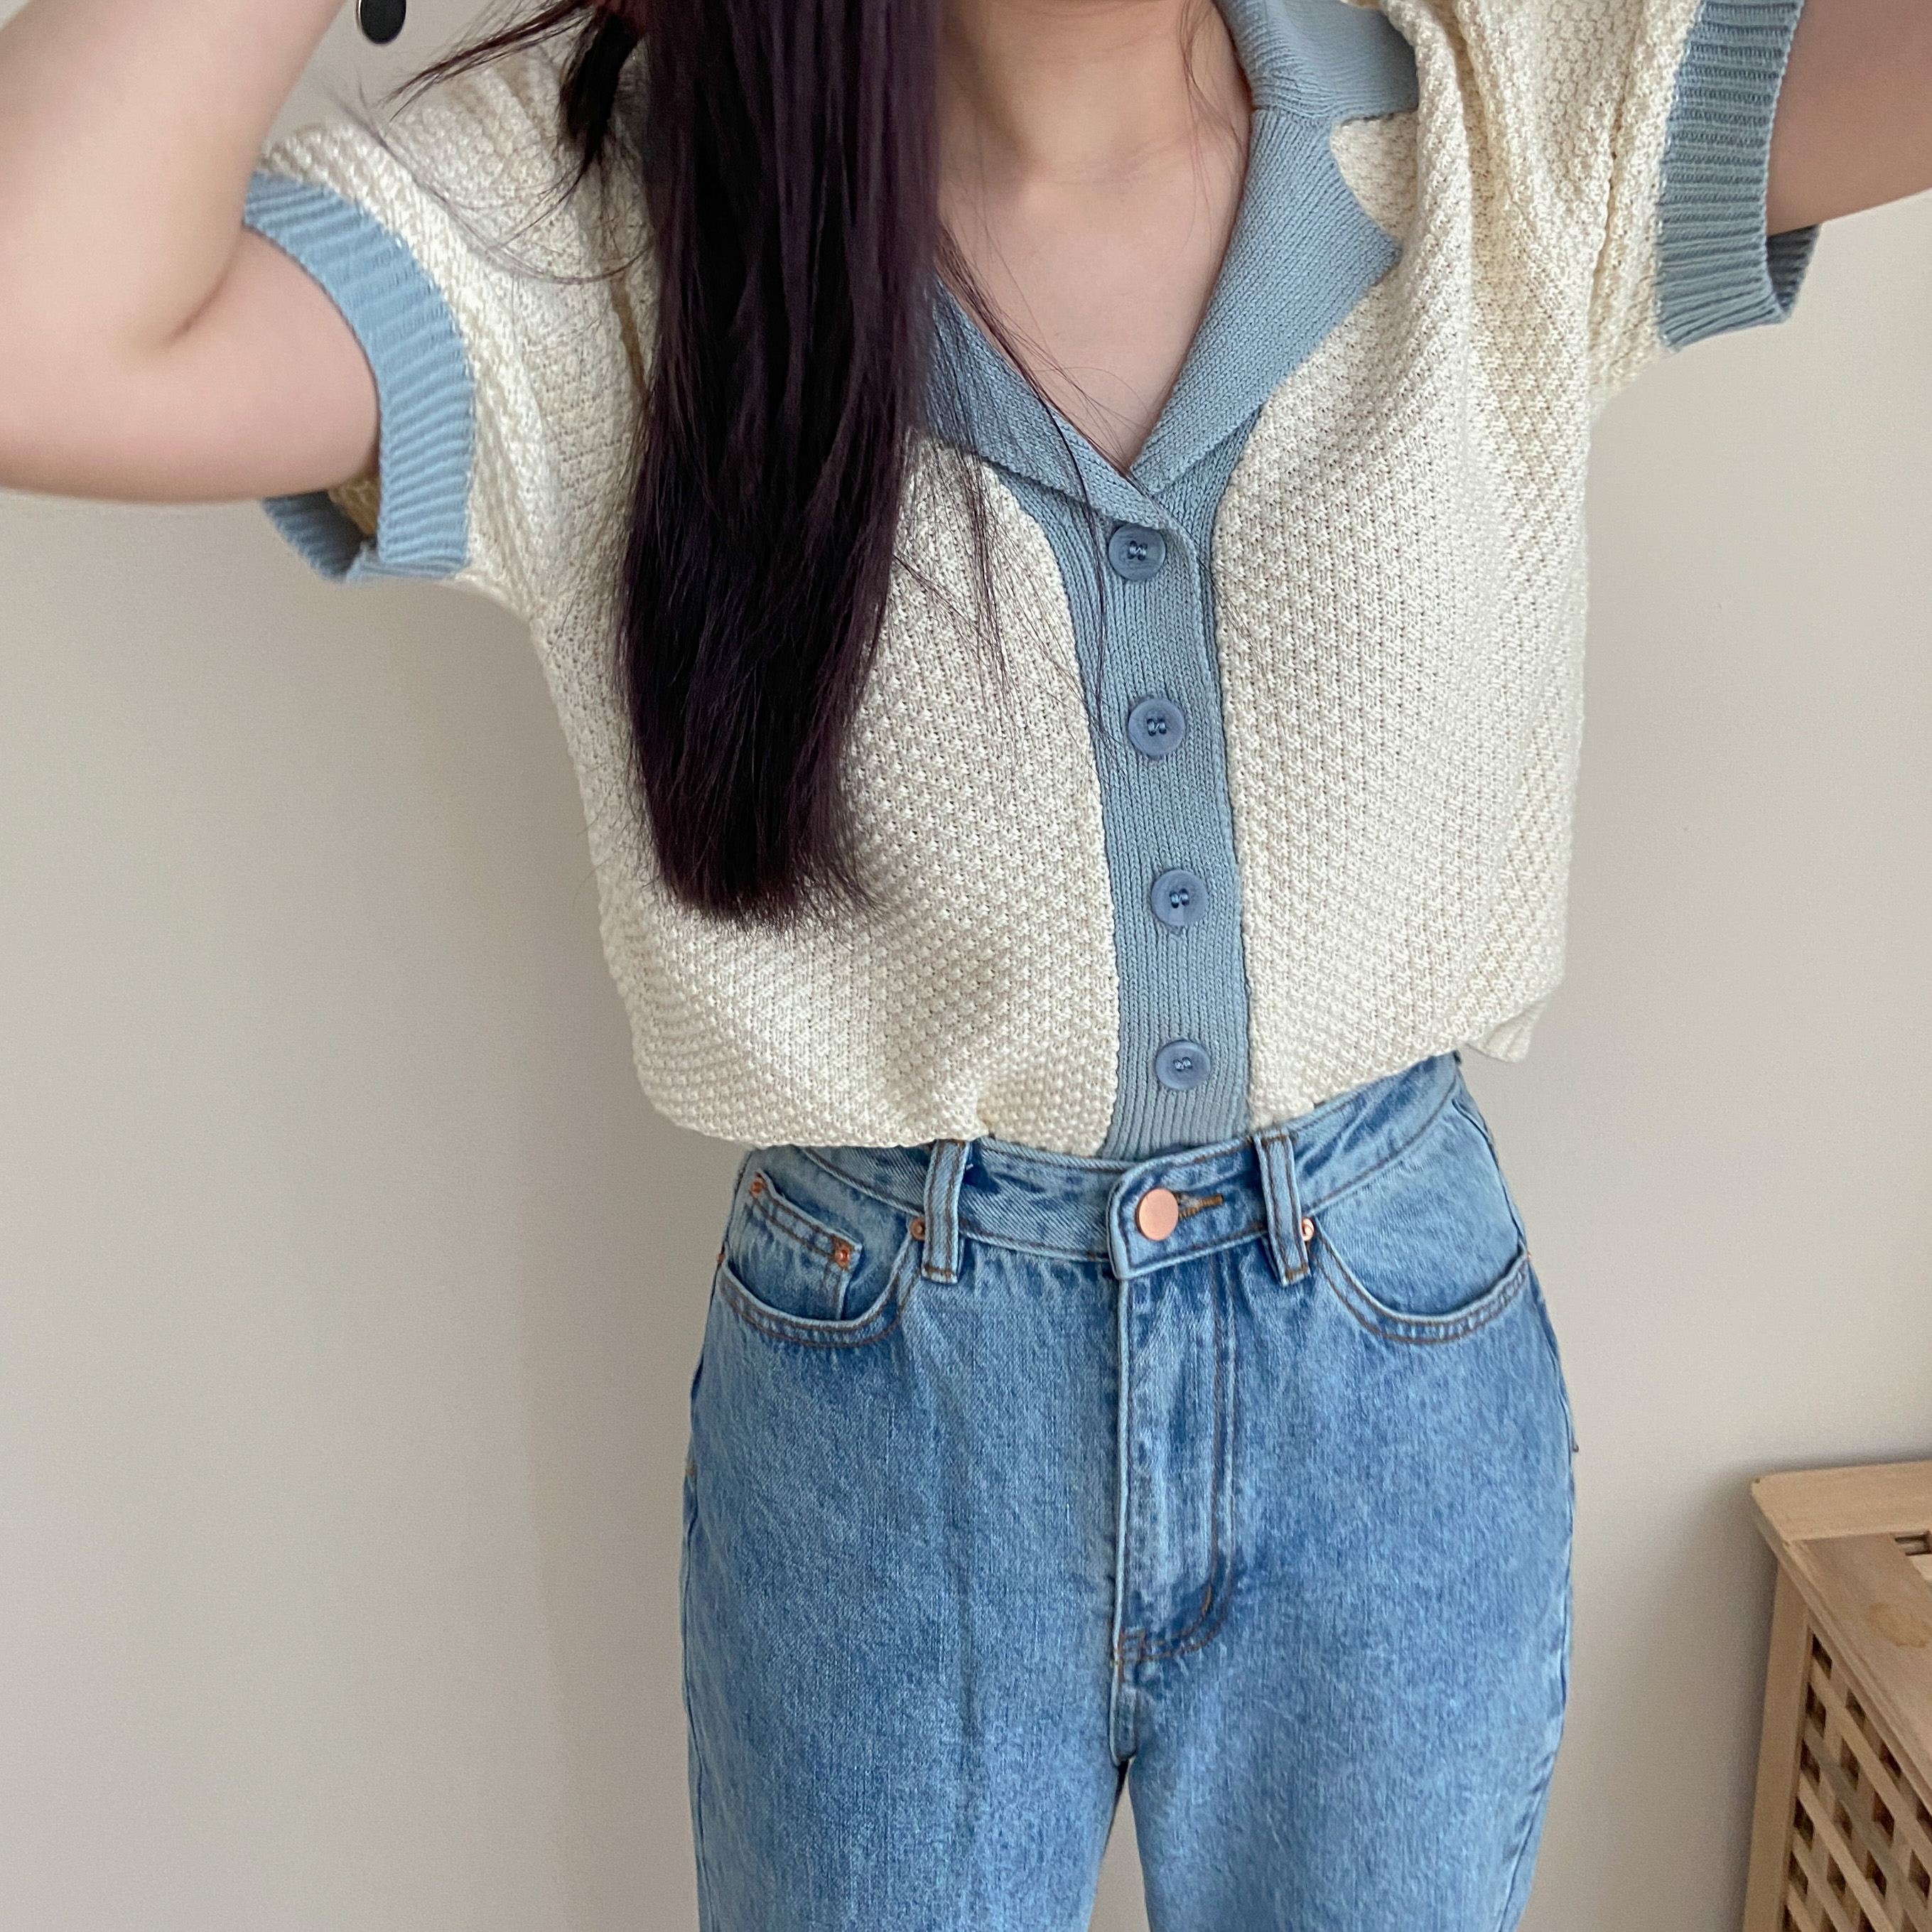 Jovie Contrast Knit Top in Blue 韩系气质撞色系针织上衣 单卖 (Blue)